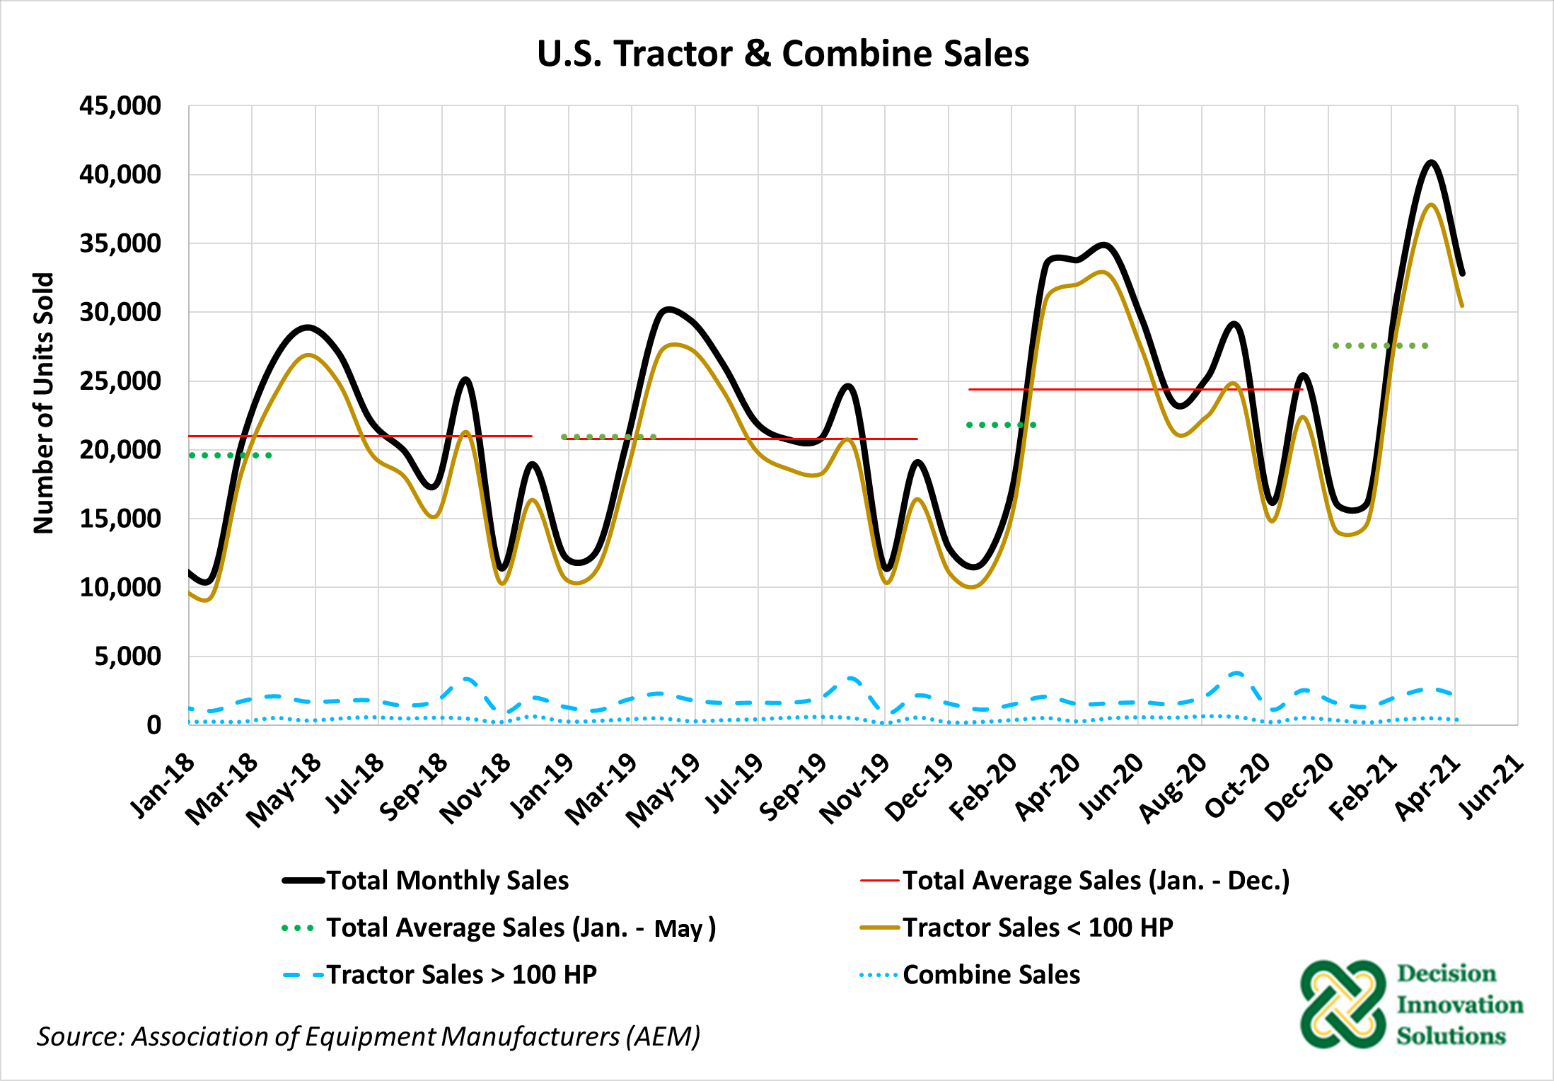 Figure 1. US Tractor & Combine Sales 